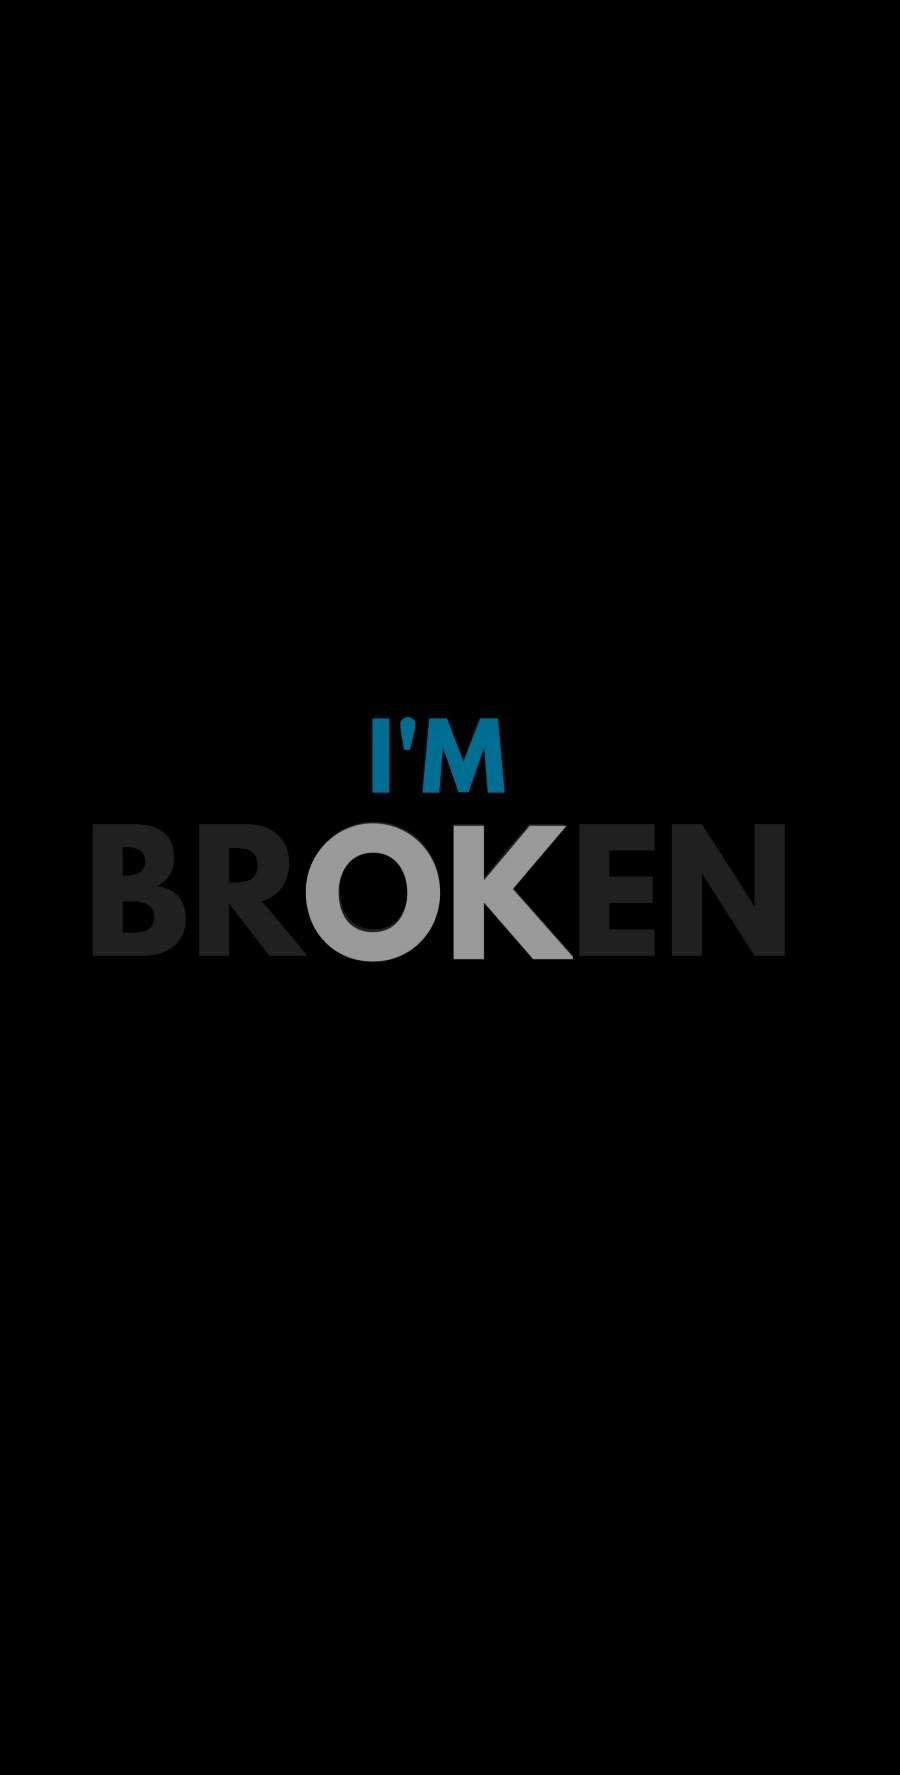 I'm Broken Wallpapers - Top Free I'm Broken Backgrounds - WallpaperAccess